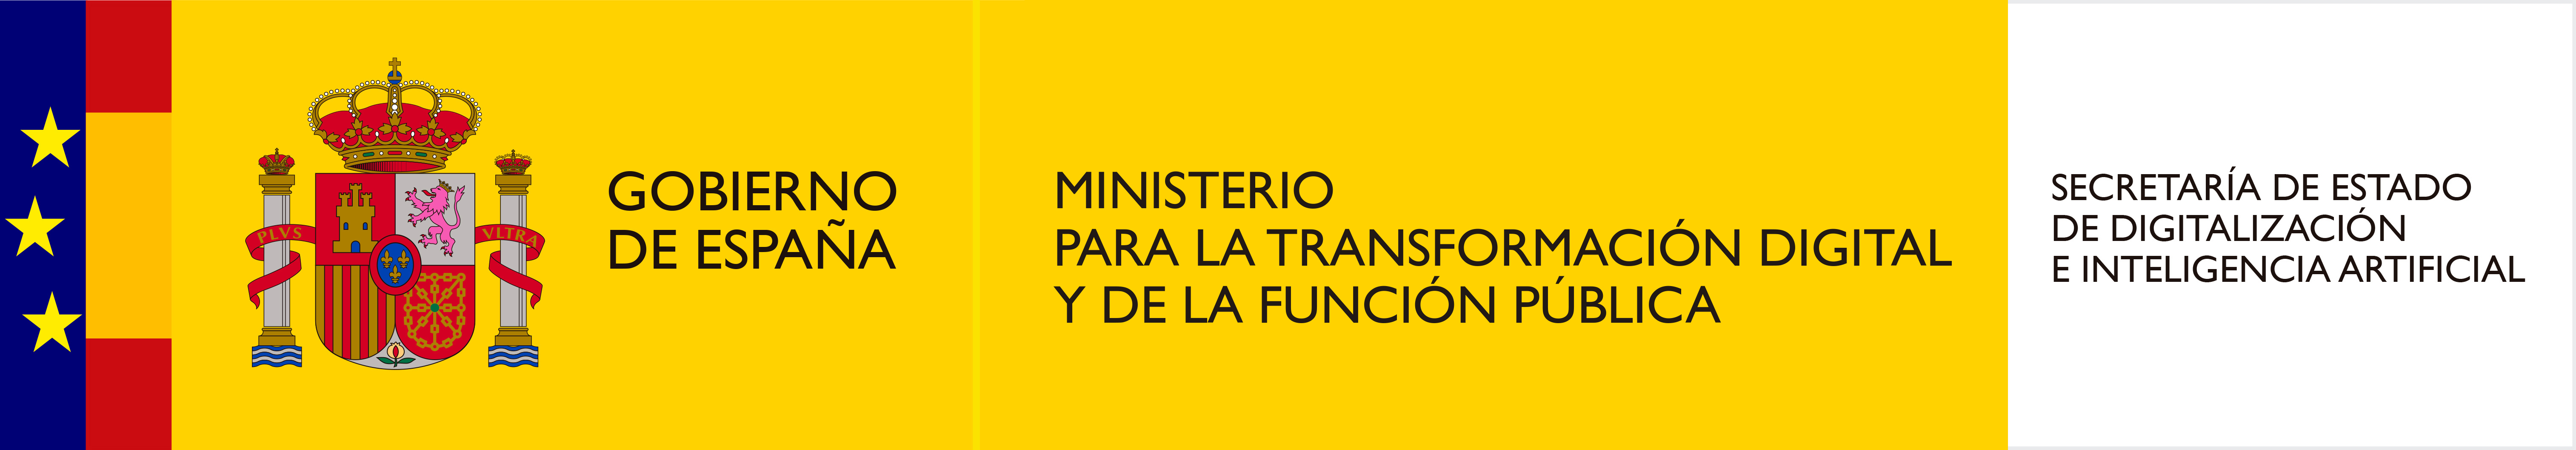 Gobierno de España. Ministerio para la transformación digital y de la función pública. Secretaría de estado de digitalización e inteligencia artificial